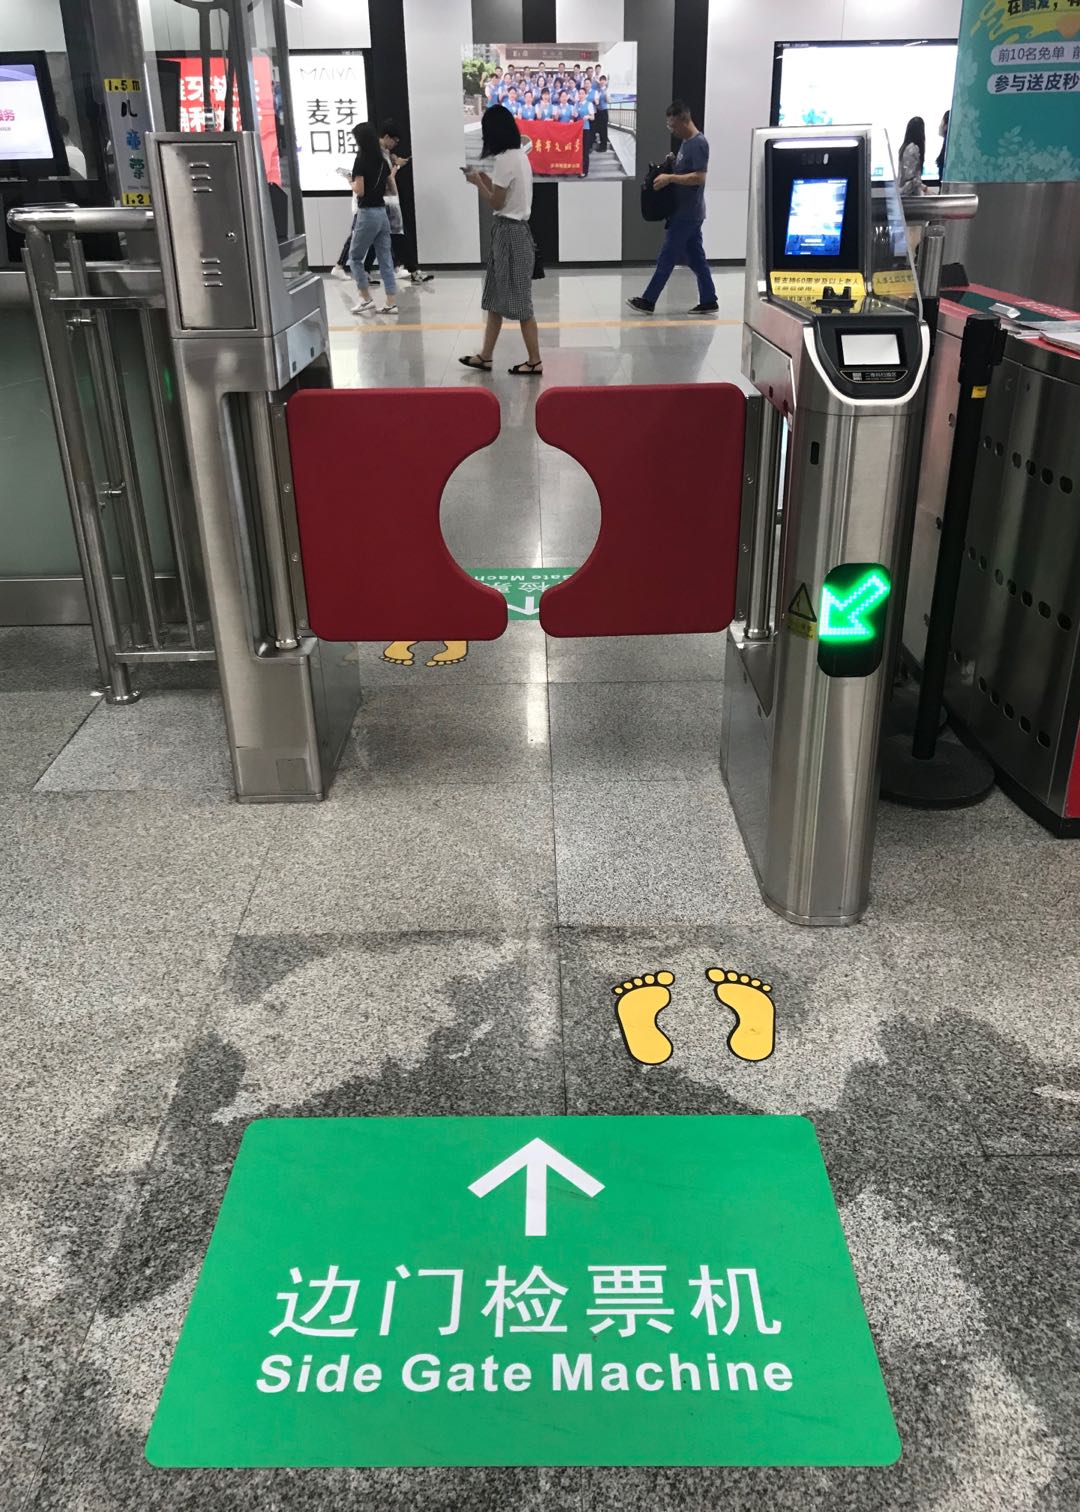 可自助进行人脸及指静脉注册深圳地铁本次亮相的新设备自助票务处理机